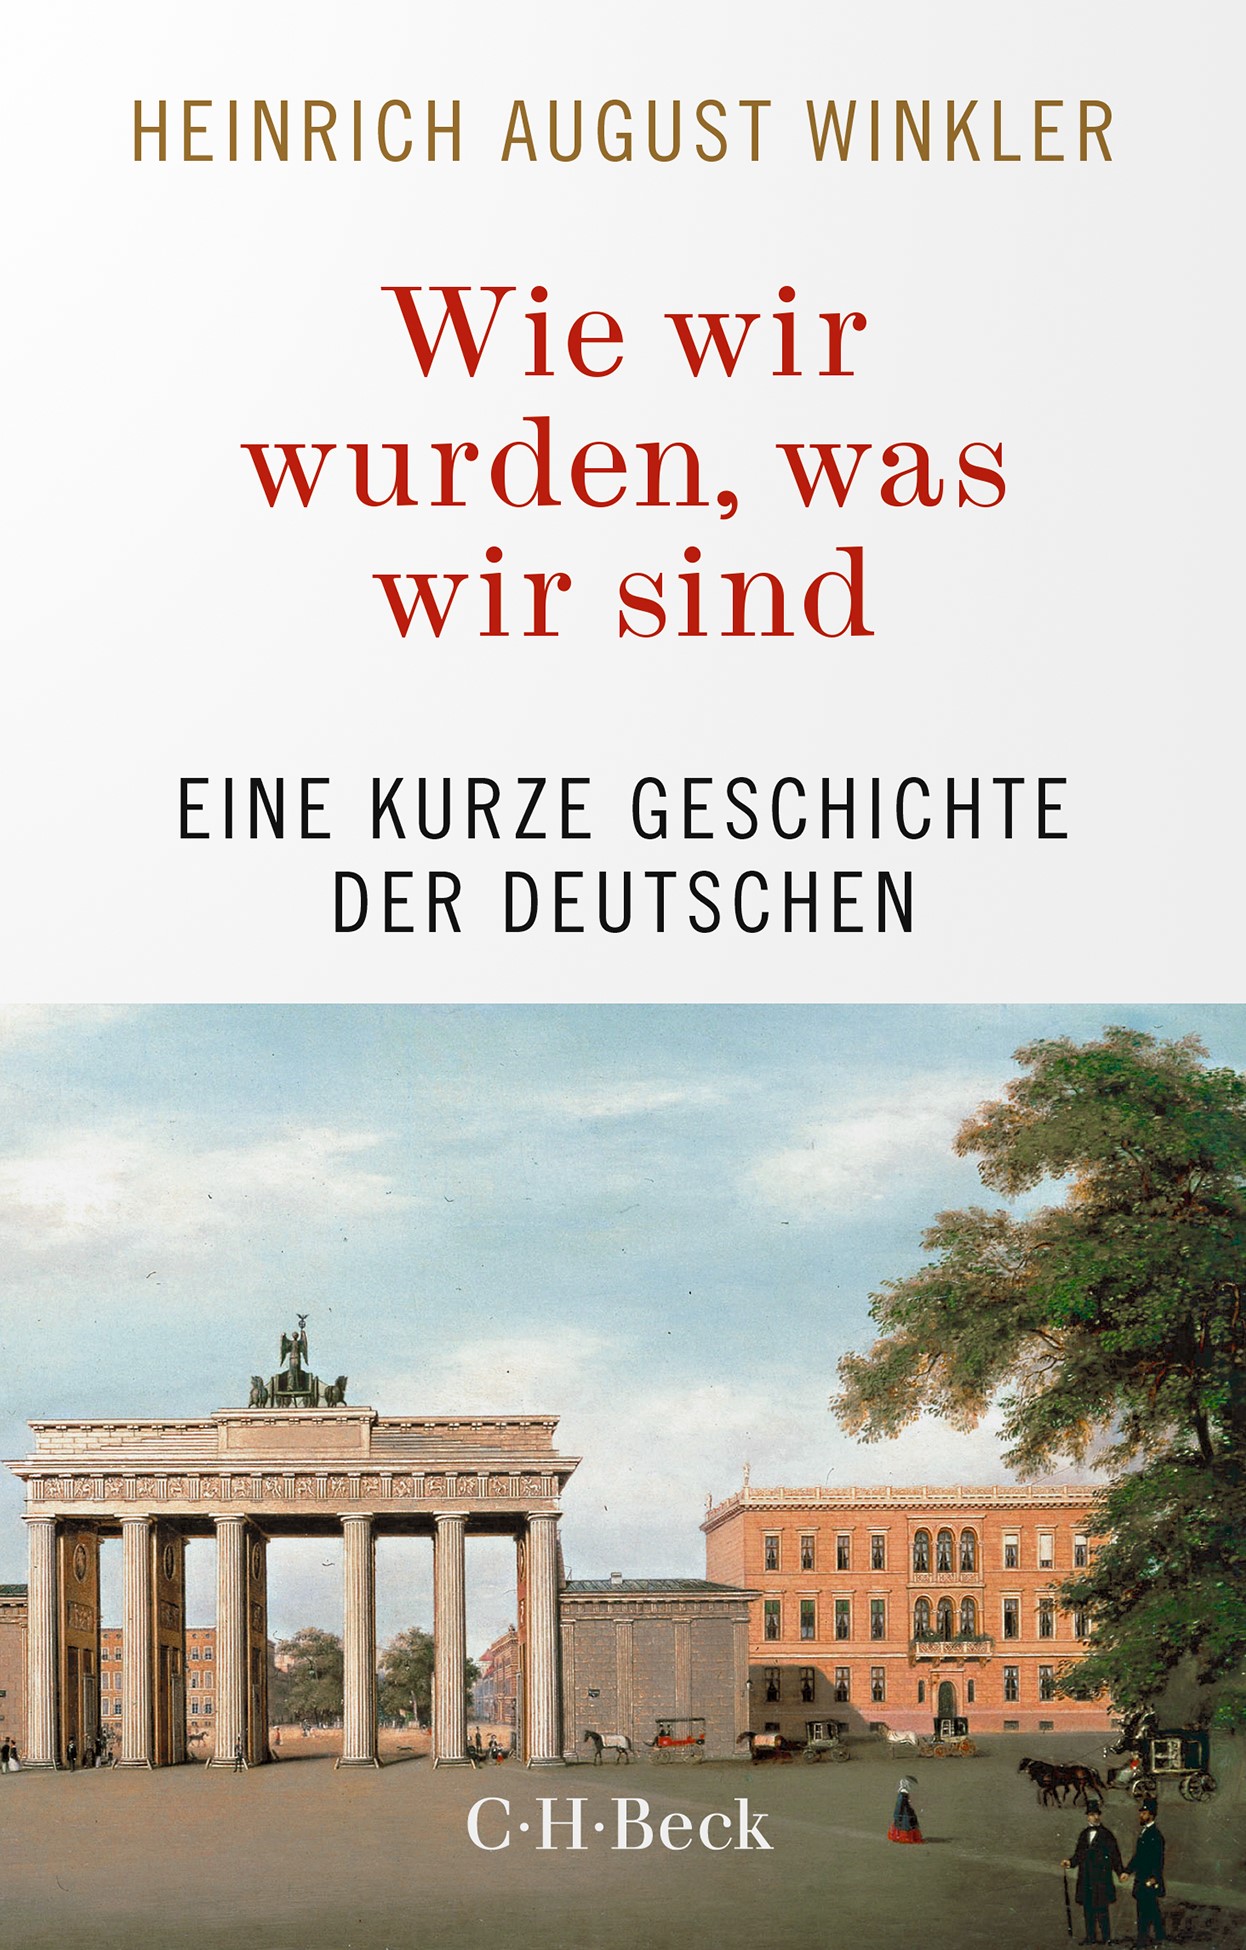 Cover: Winkler, Heinrich August, Wie wir wurden, was wir sind